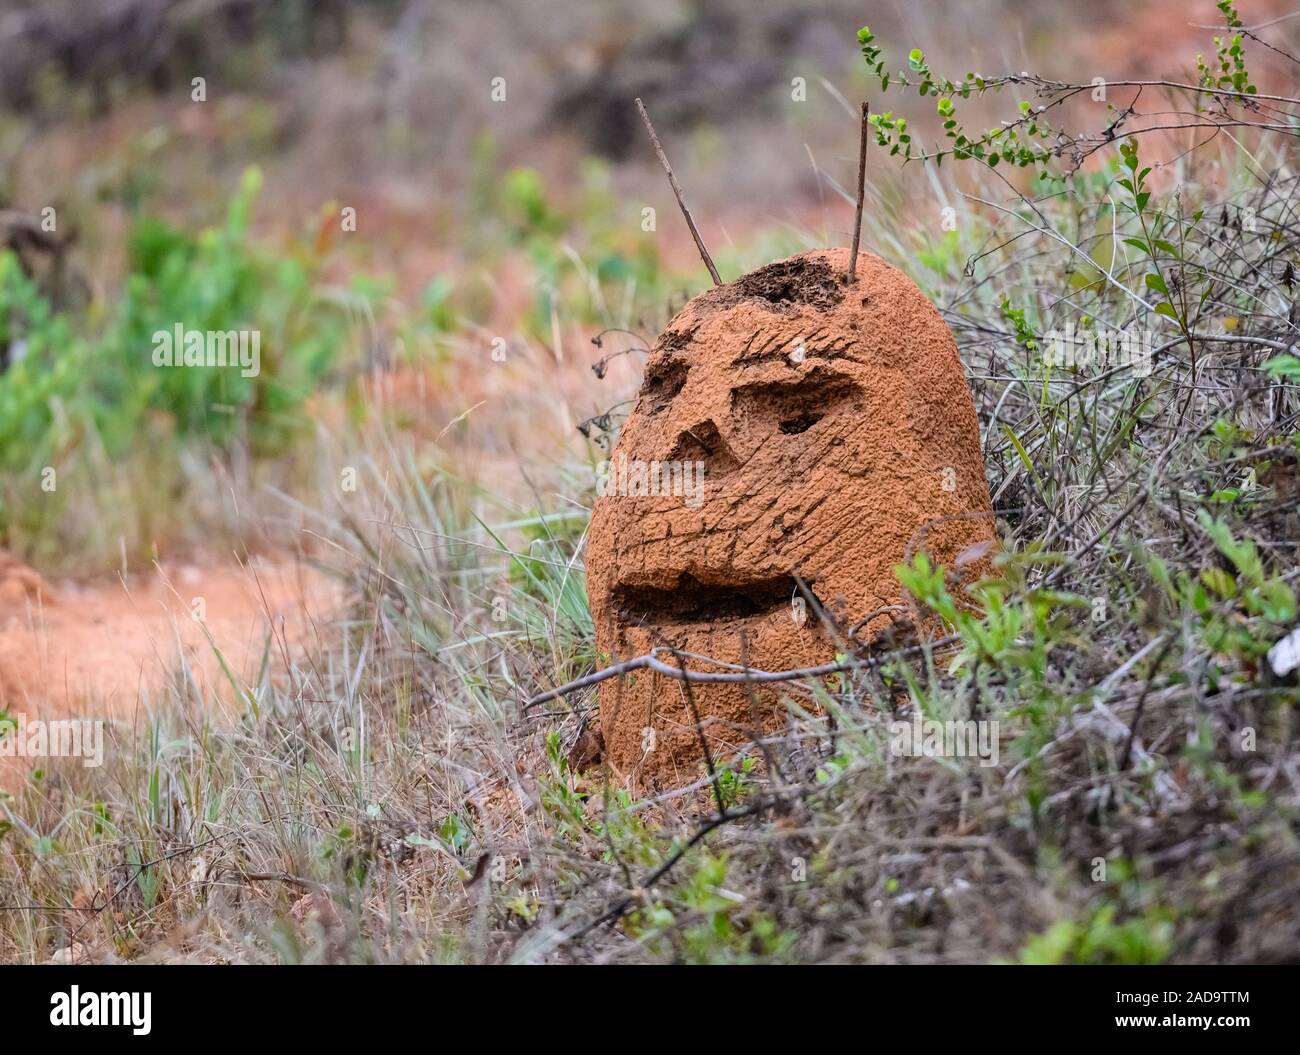 Schelm geschnitzt, ein menschliches Gesicht aus einer Ameise in der Cerrado von Minas Gerais, NE Brasilien, Südamerika. Stockfoto